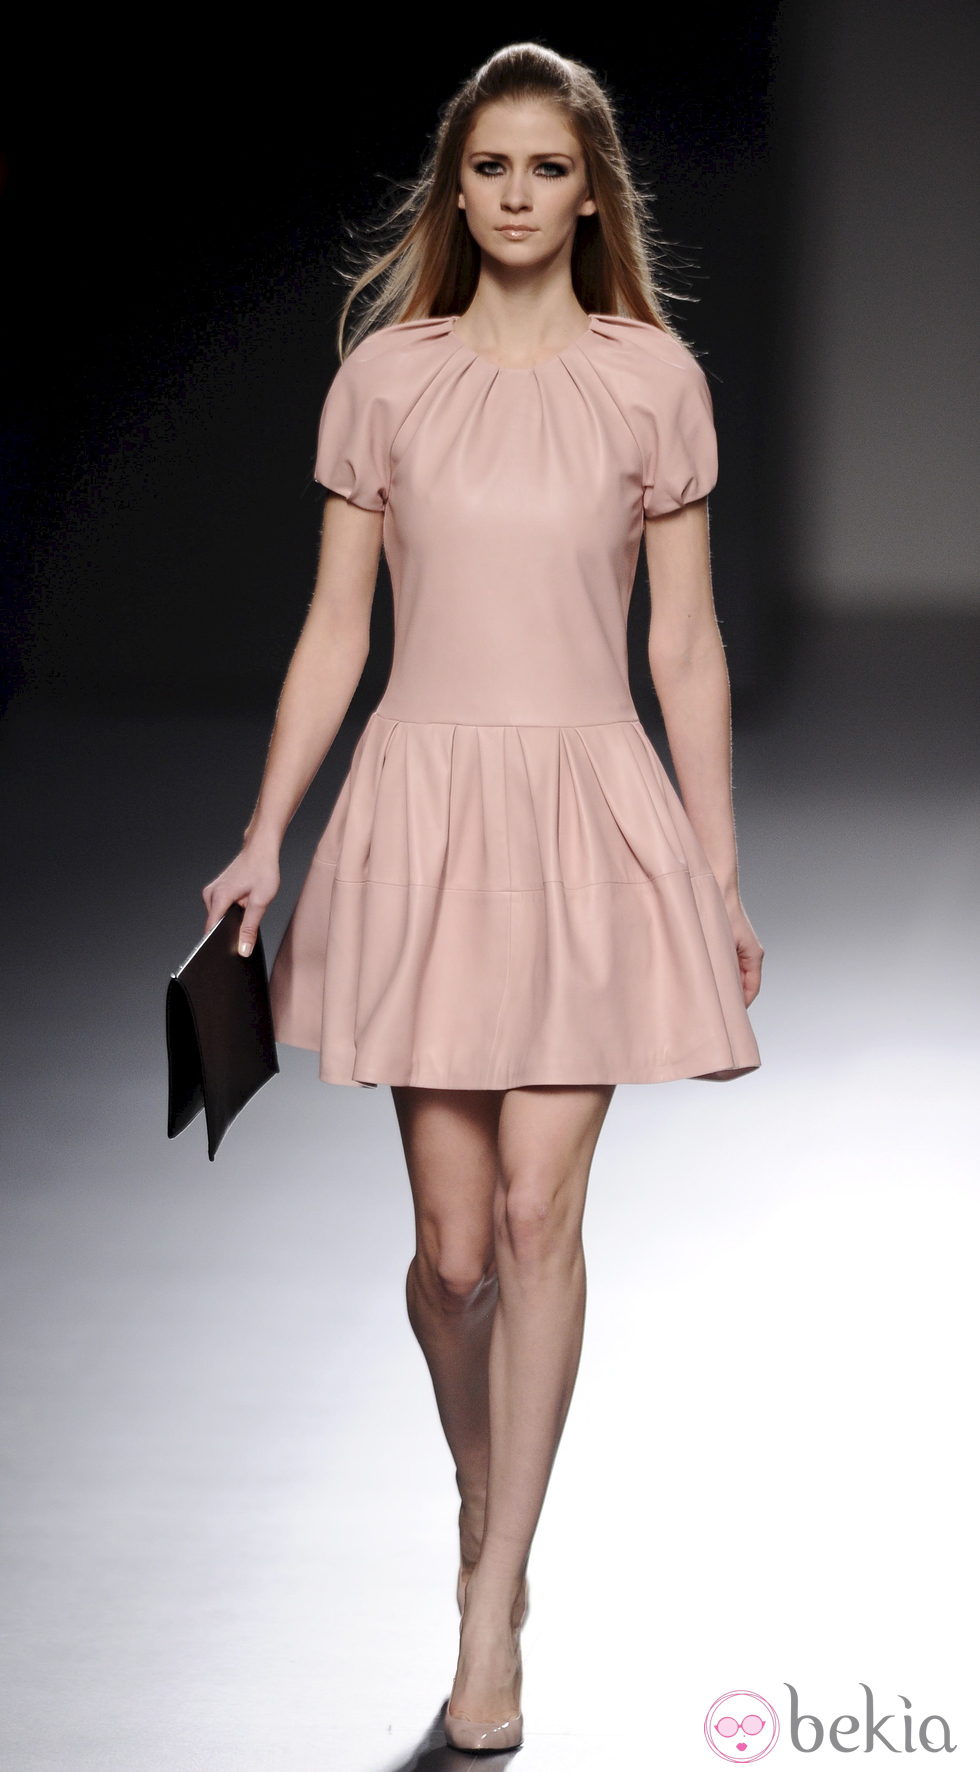 Vestido rosa de cuero de la colección otoño/invierno 2013/2014 de Teresa Helbig en Madrid Fashion Week